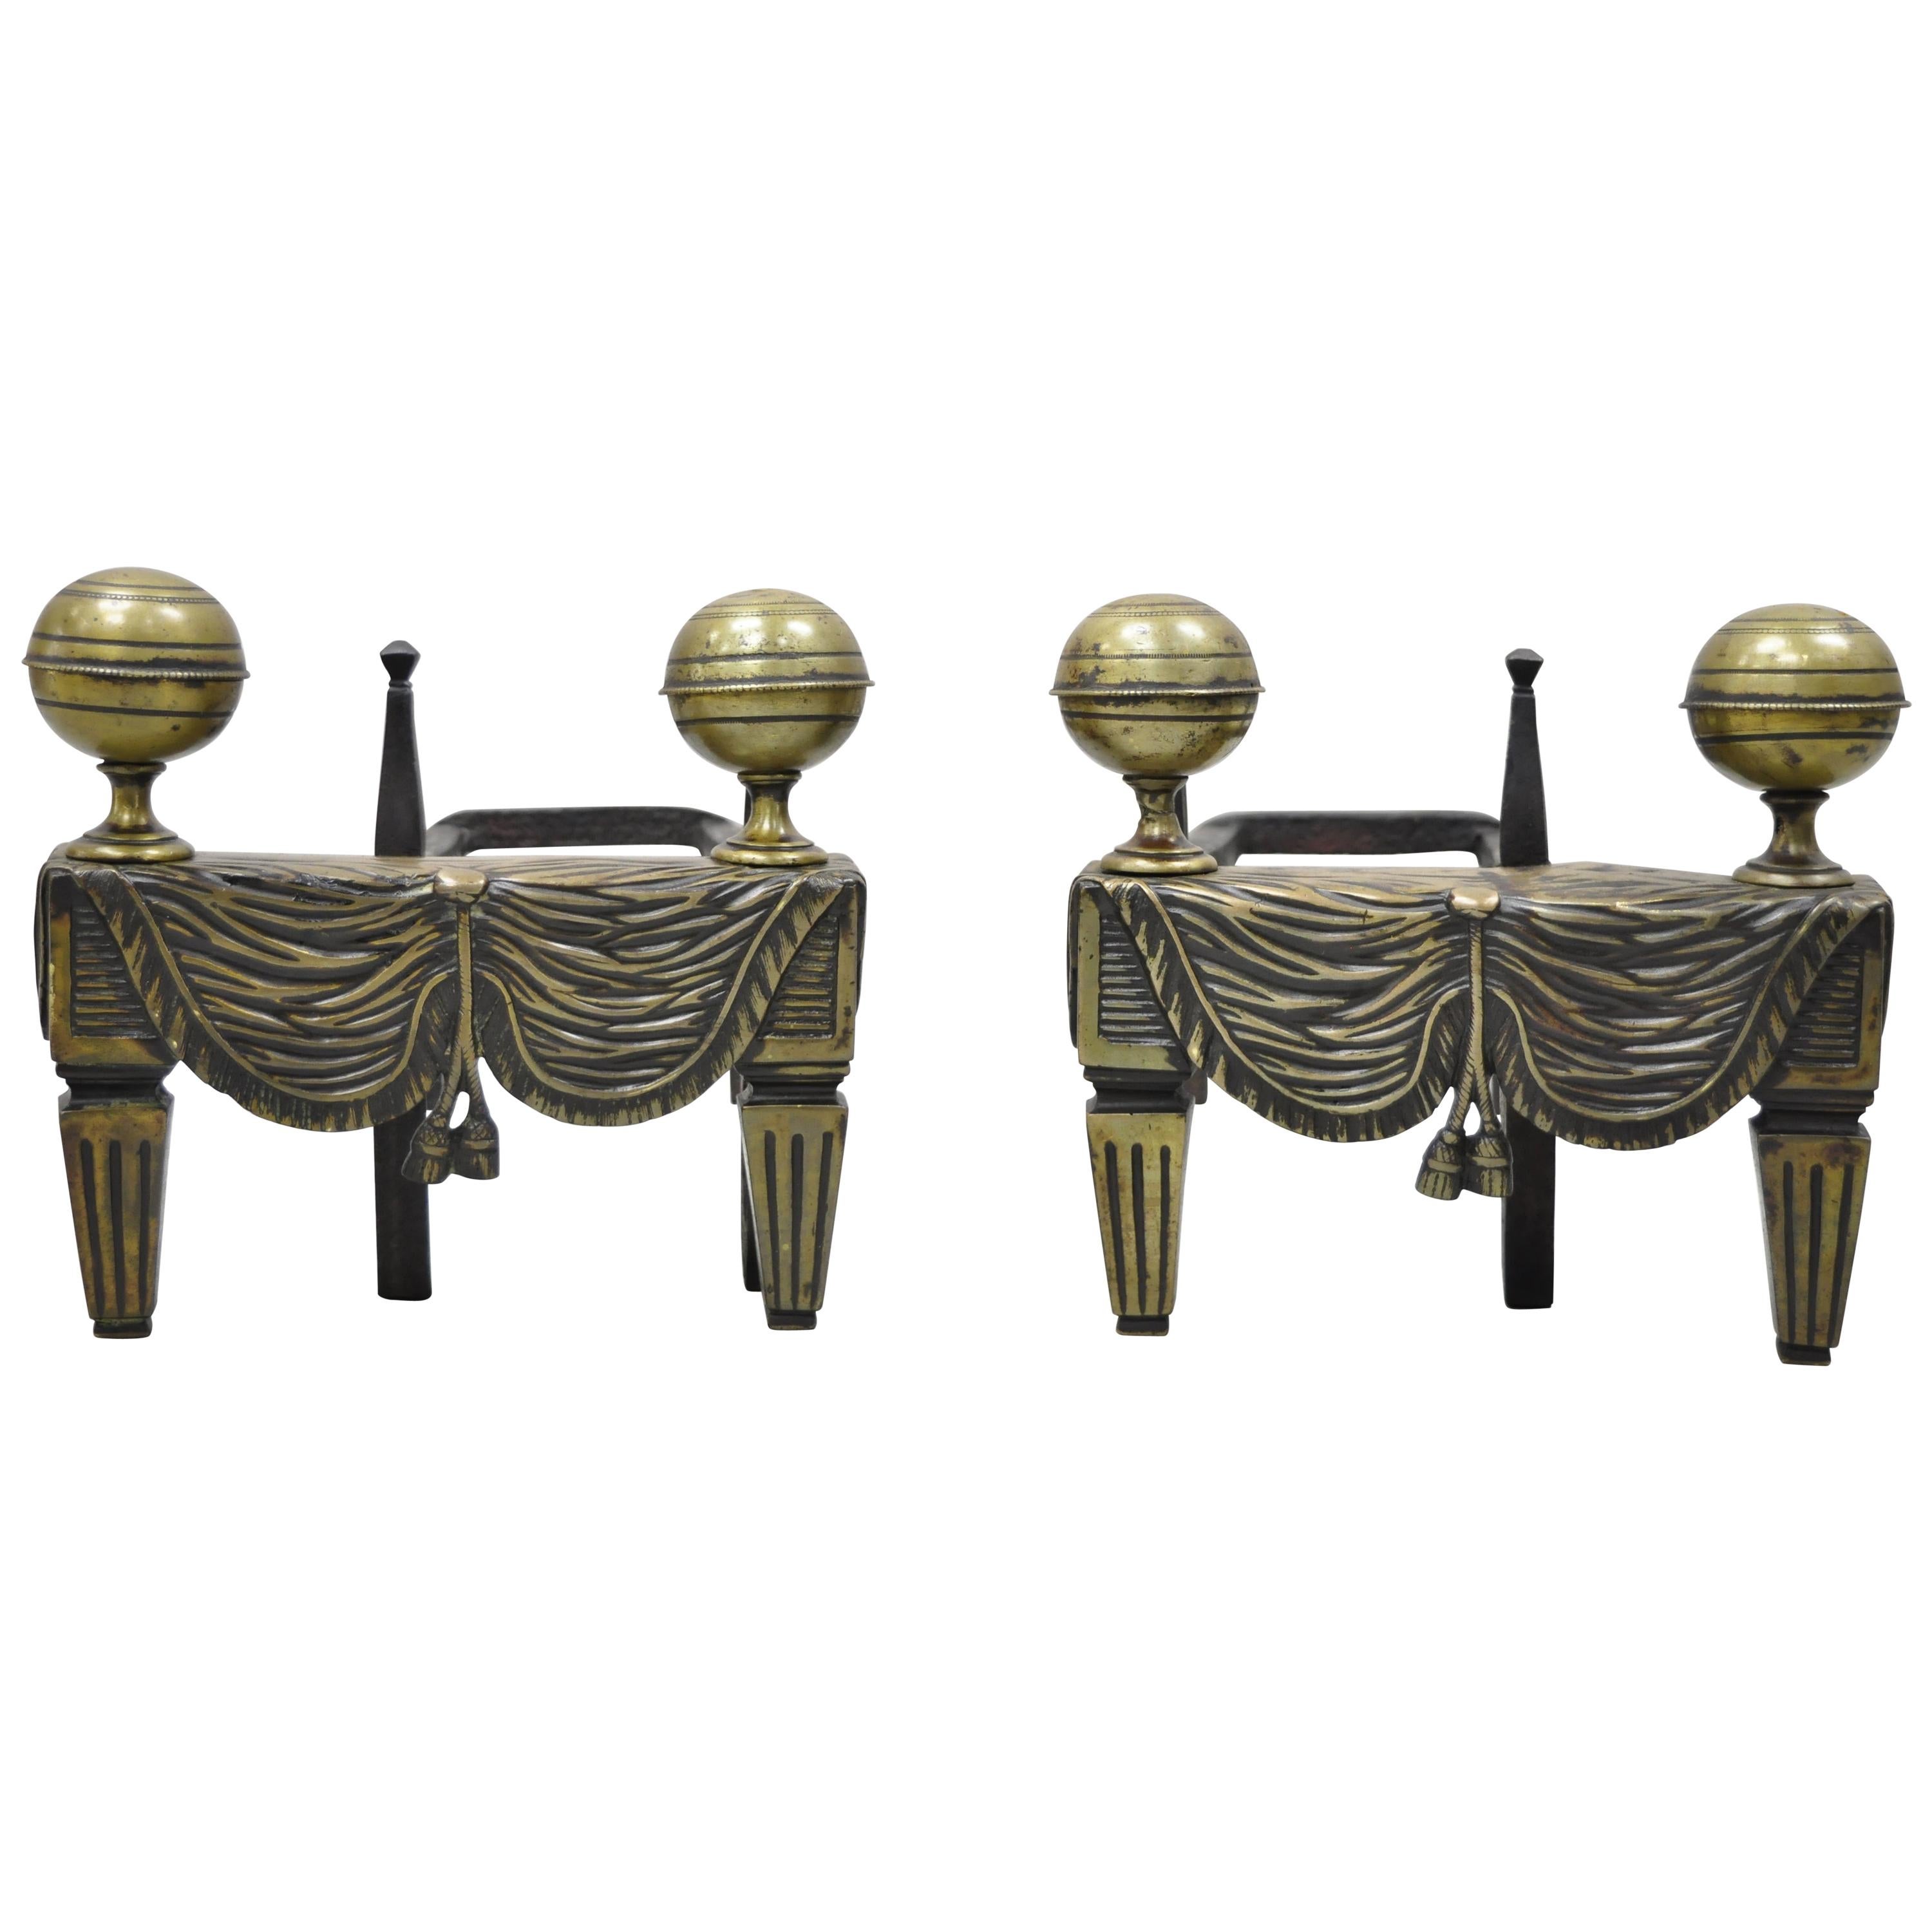 Paire de petits chenets de cannon de style Empire français en bronze avec drapeau et glands en forme de chenet